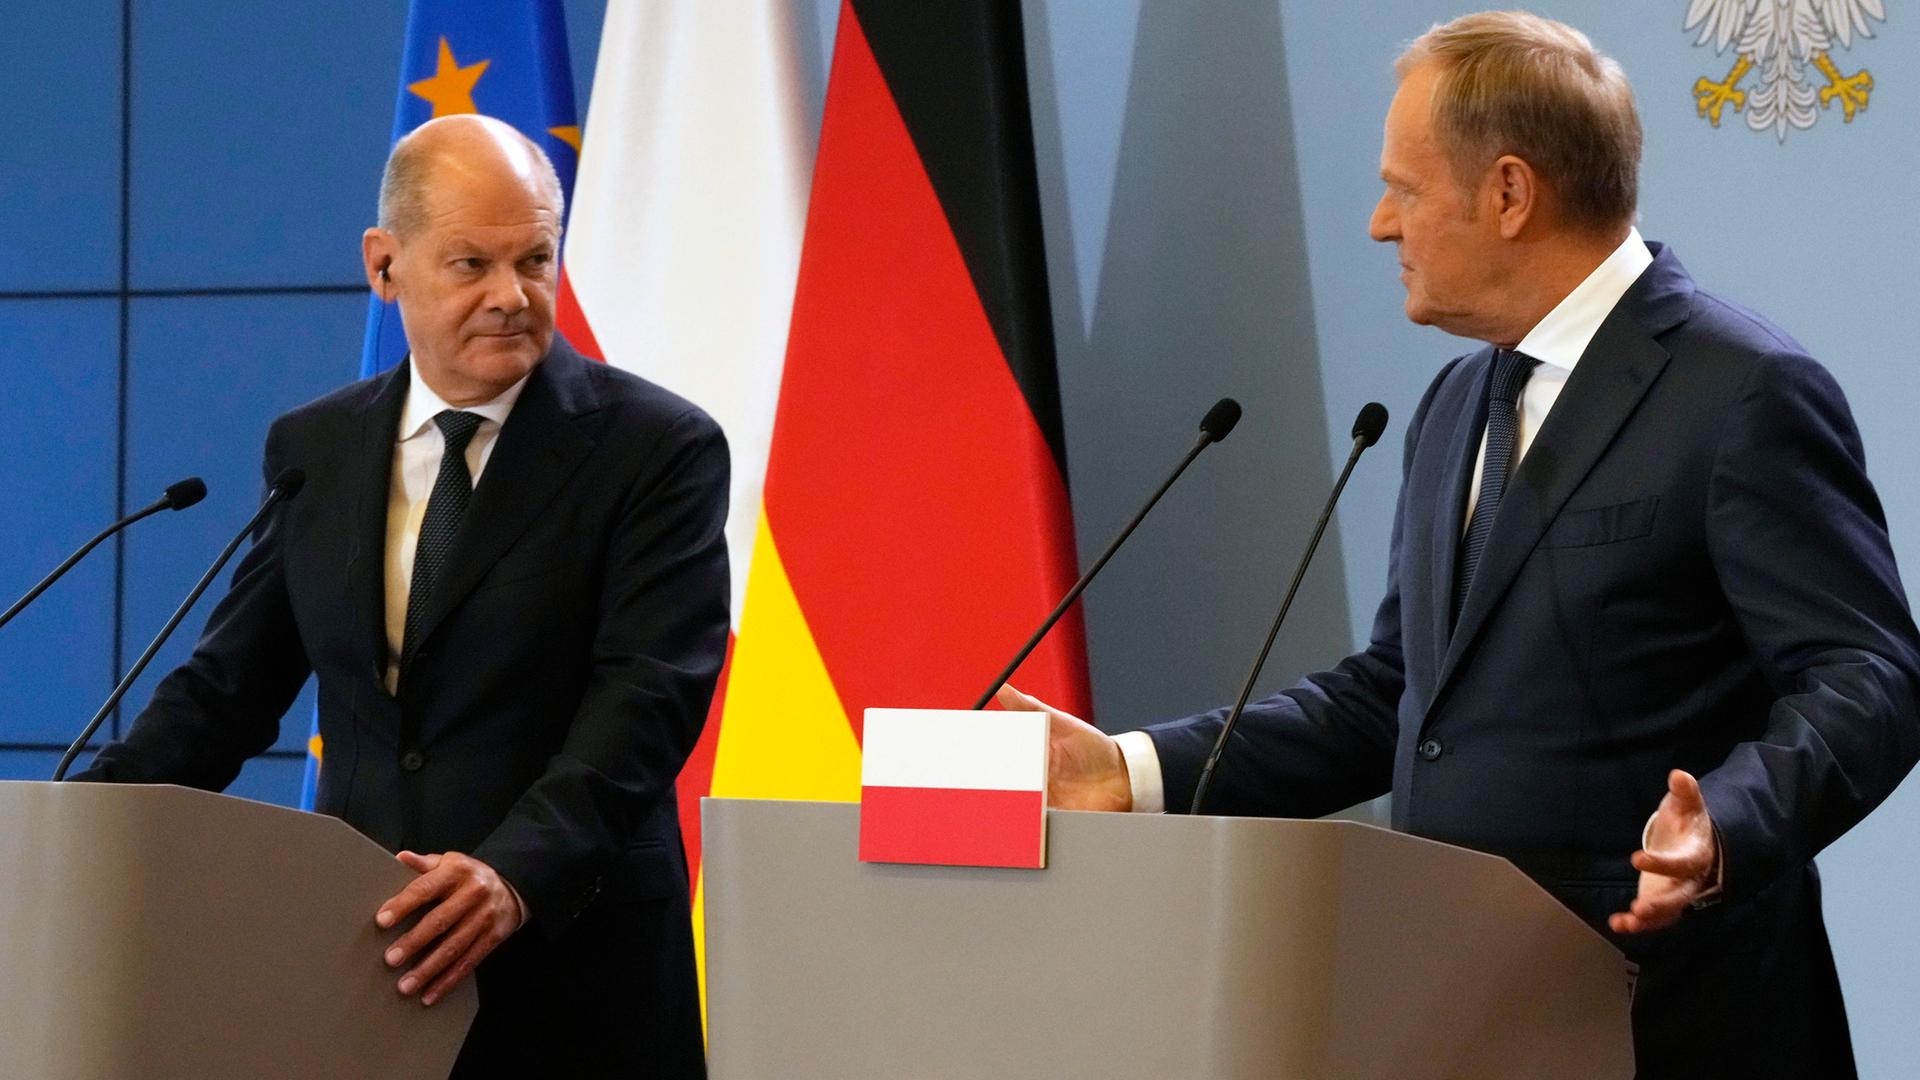 Bundeskanzler Scholz und der Ministerpräsident von Polen, Tusk, stehen bei einer Pressekonferenz an zwei Rednerpulten.